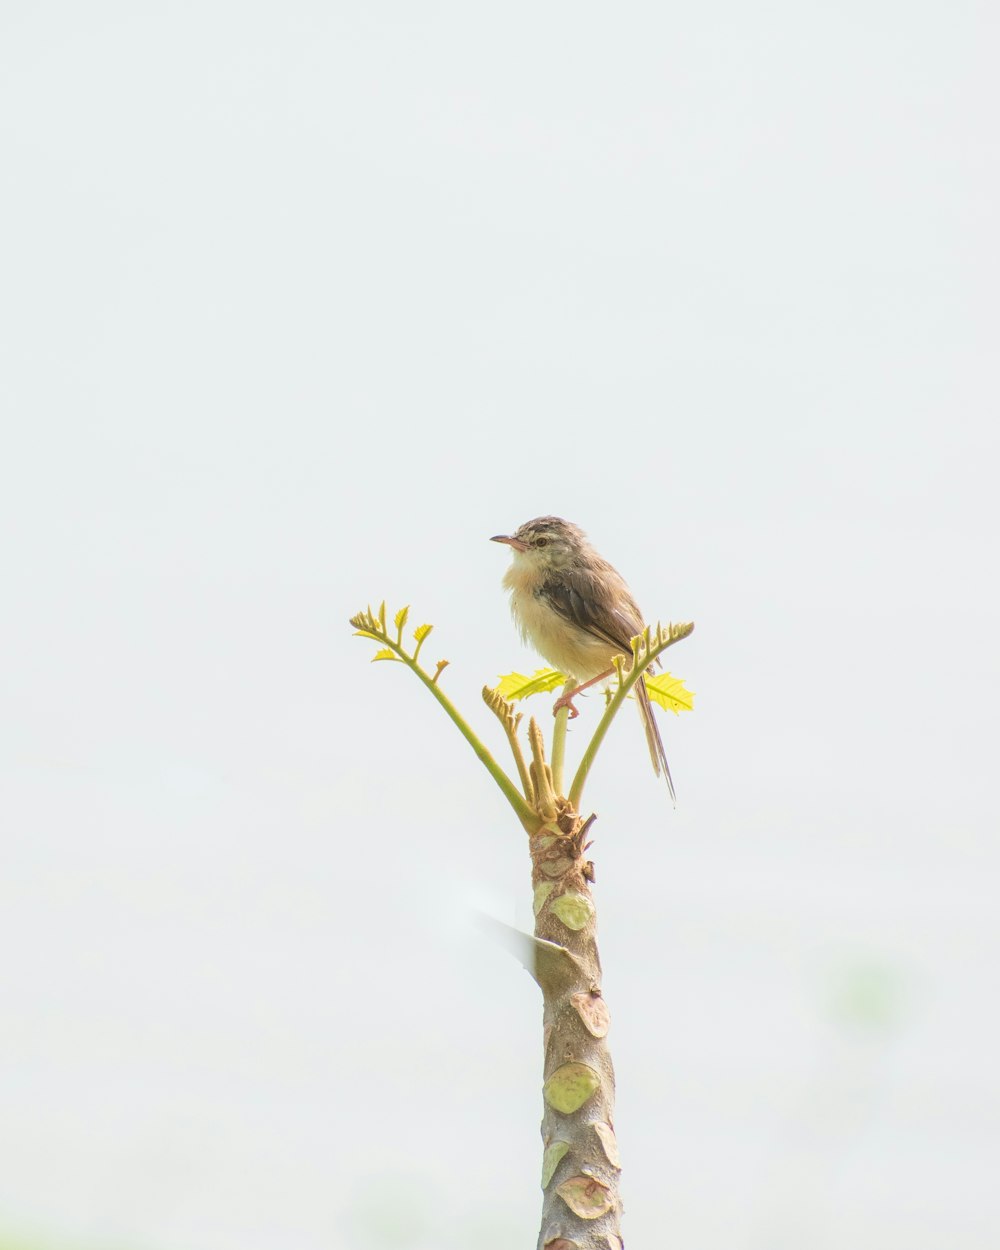 노란 꽃 위에 앉아 있는 작은 새